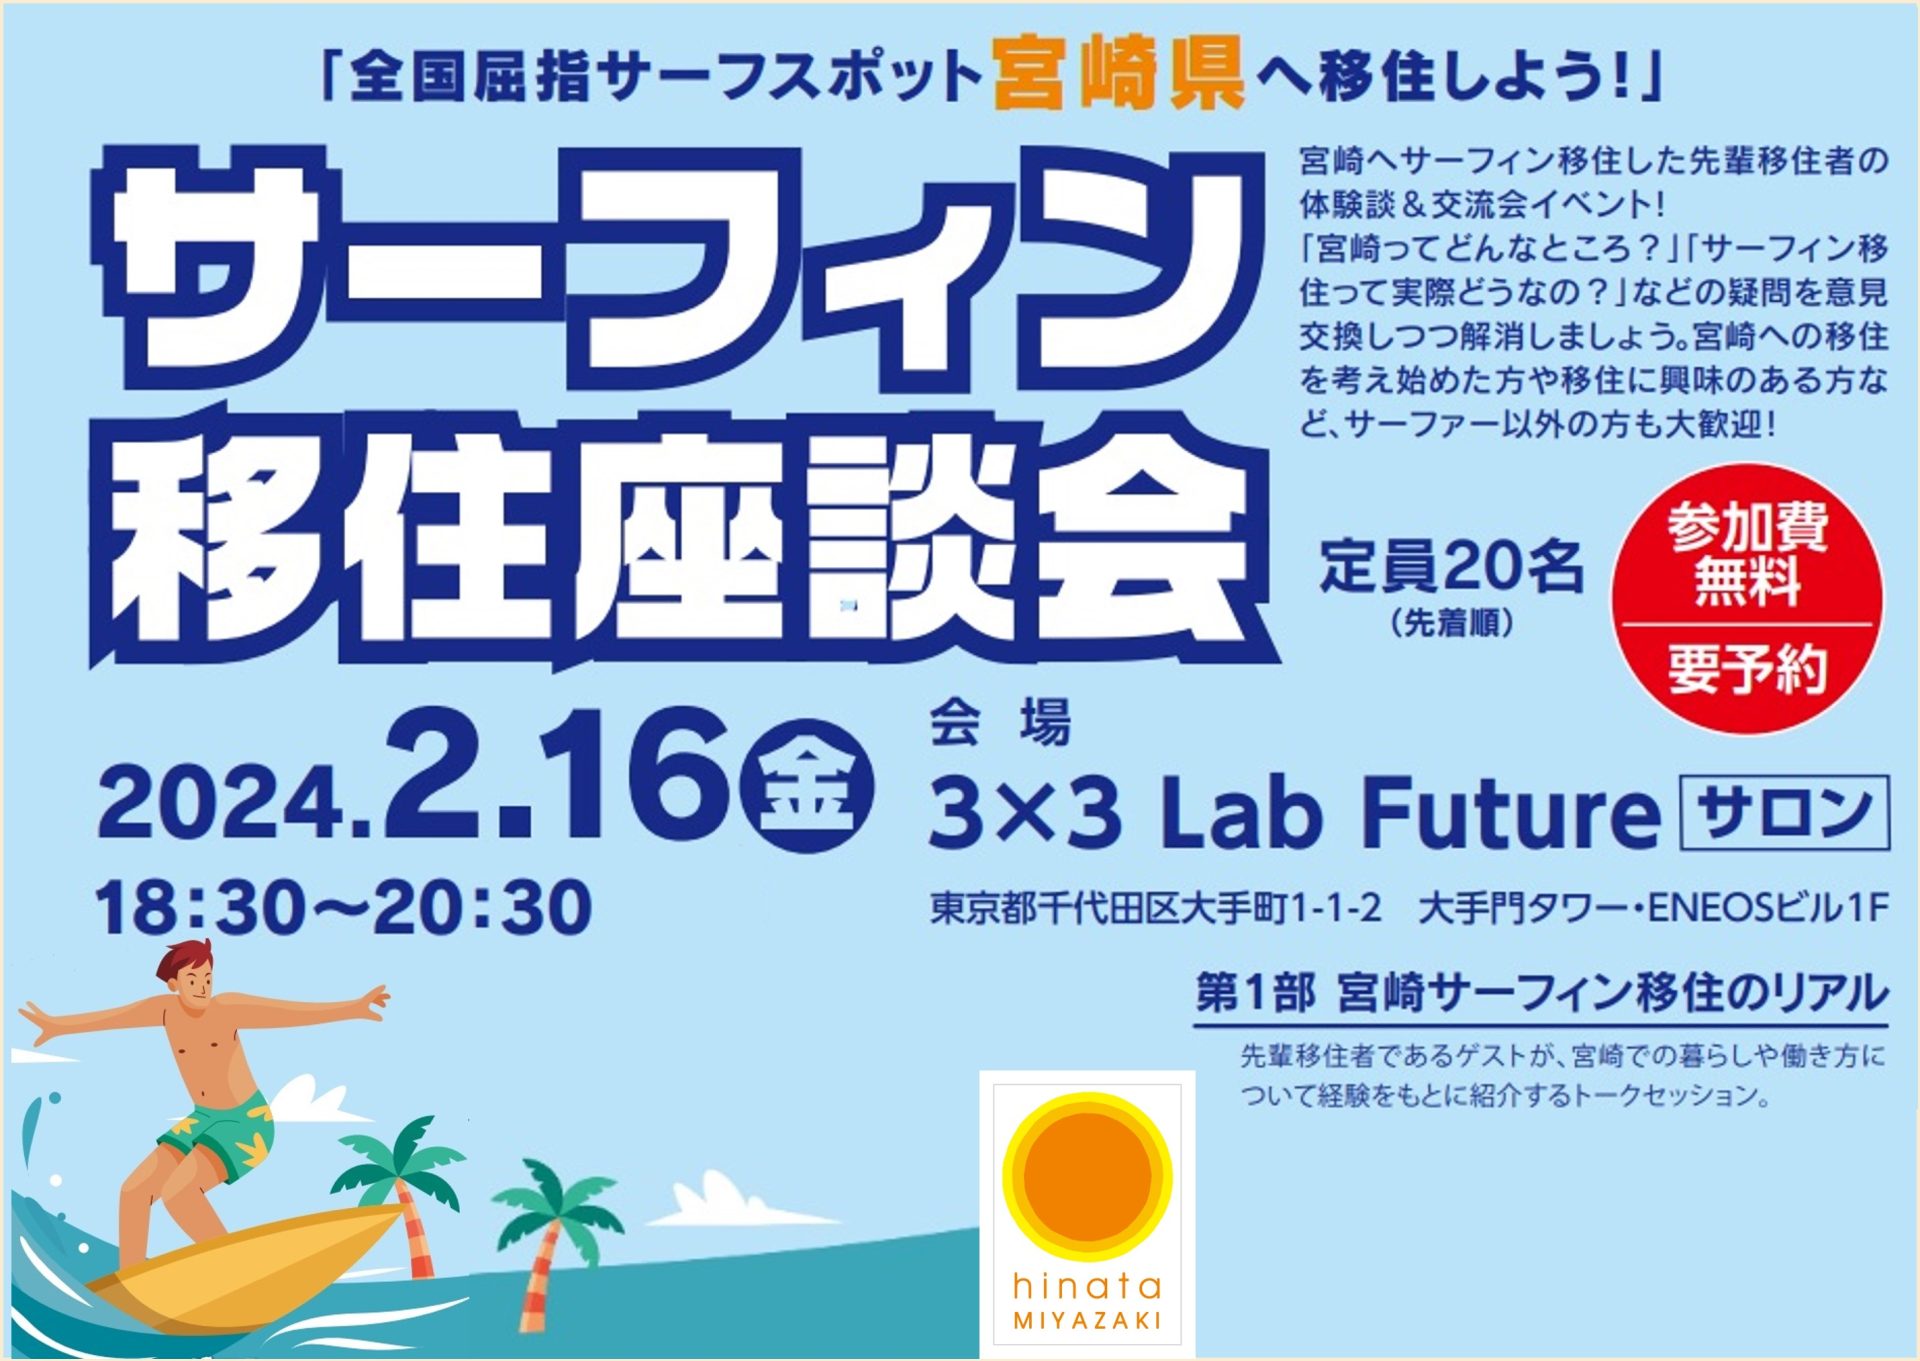 宮崎県サーフィン移住座談会 | 移住関連イベント情報